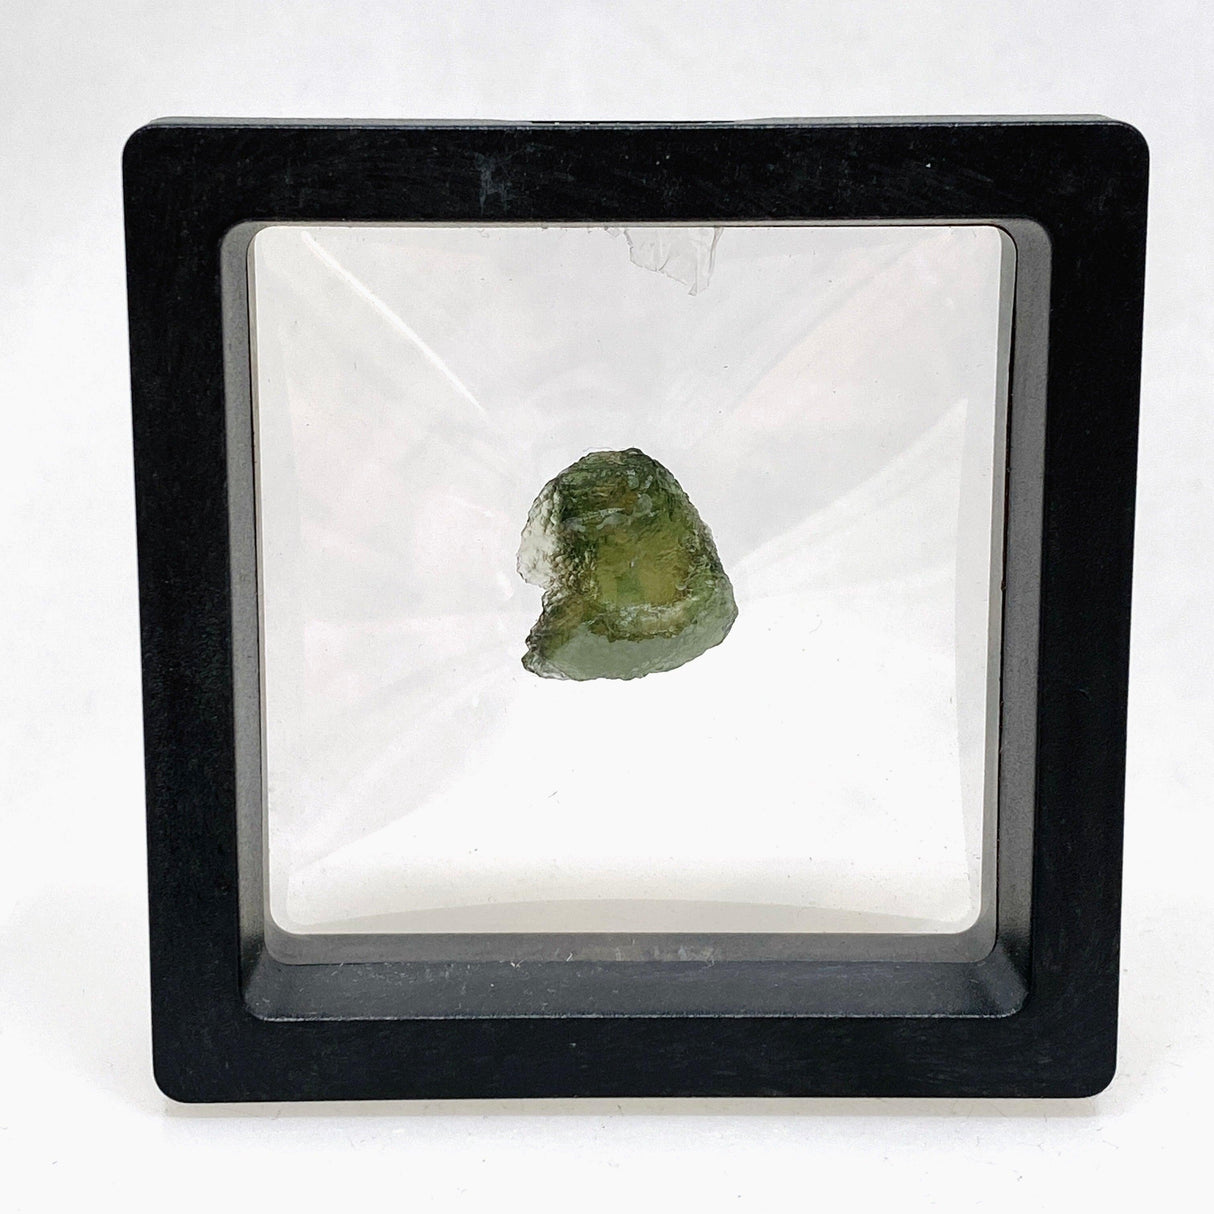 Moldavite 2.56 g IVM-10 - Nature's Magick